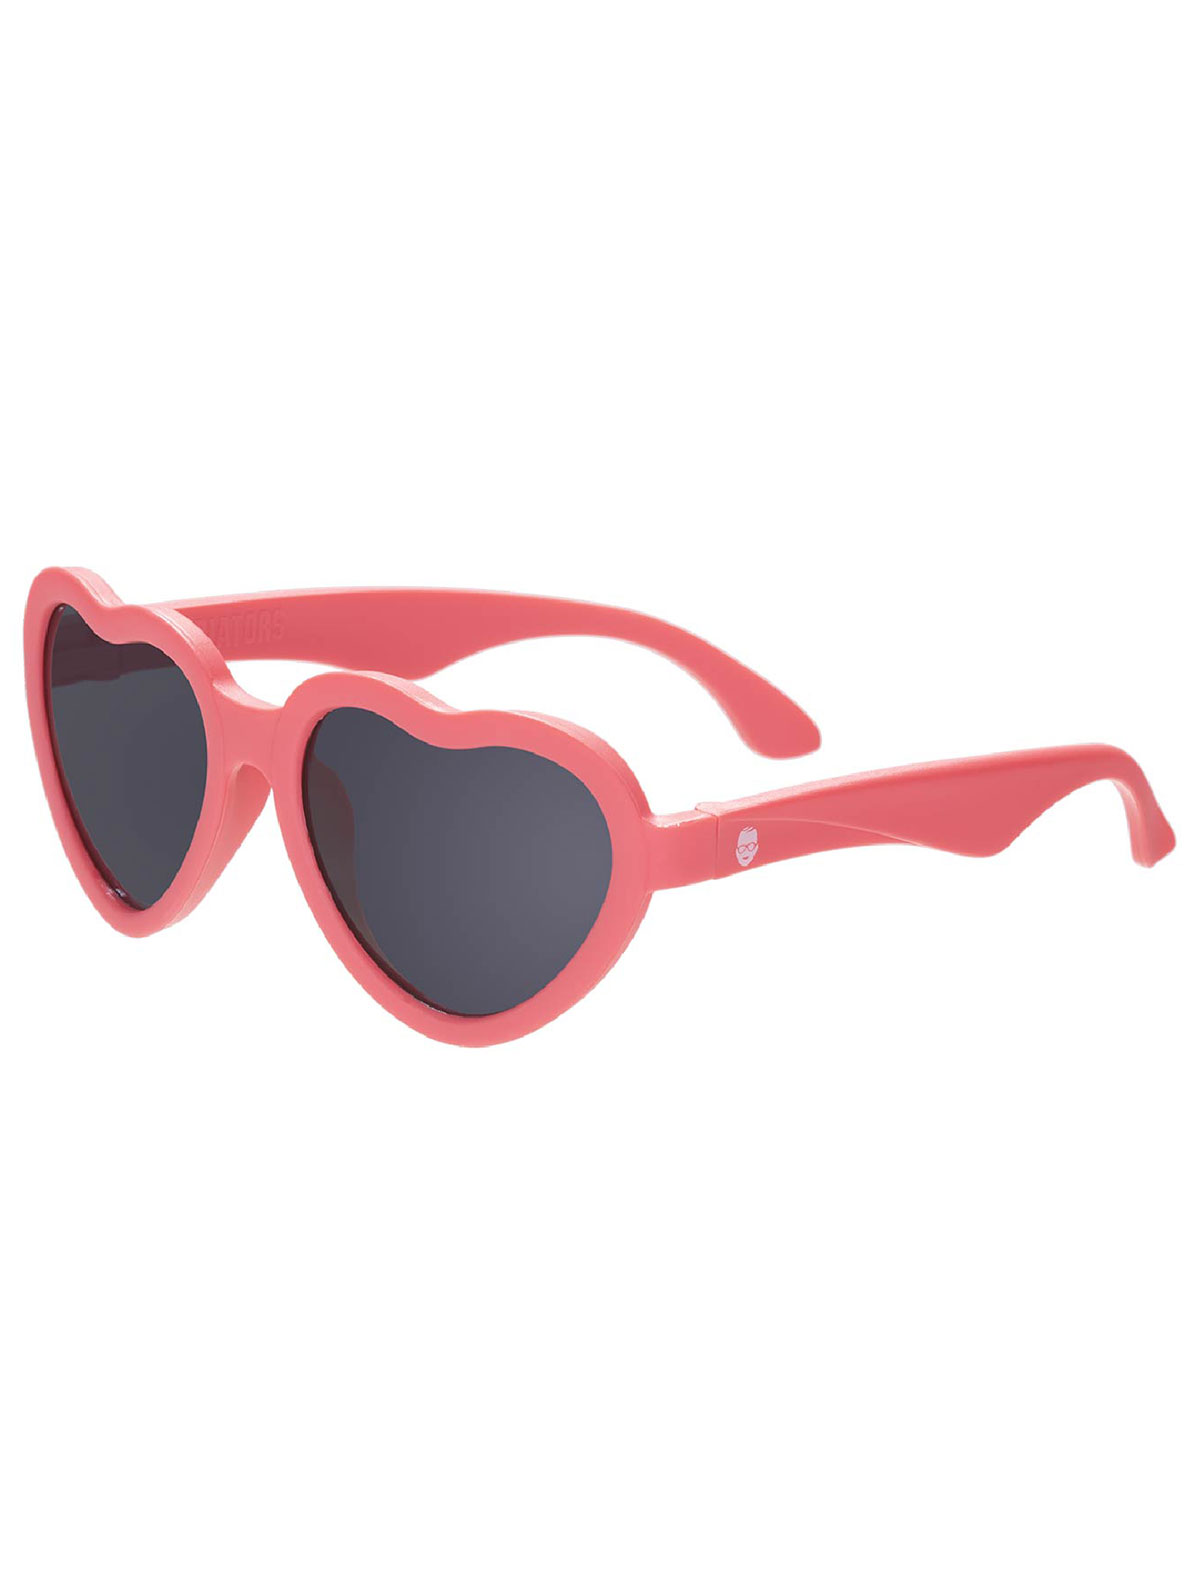 солнцезащитные очки babiators малыши, красные